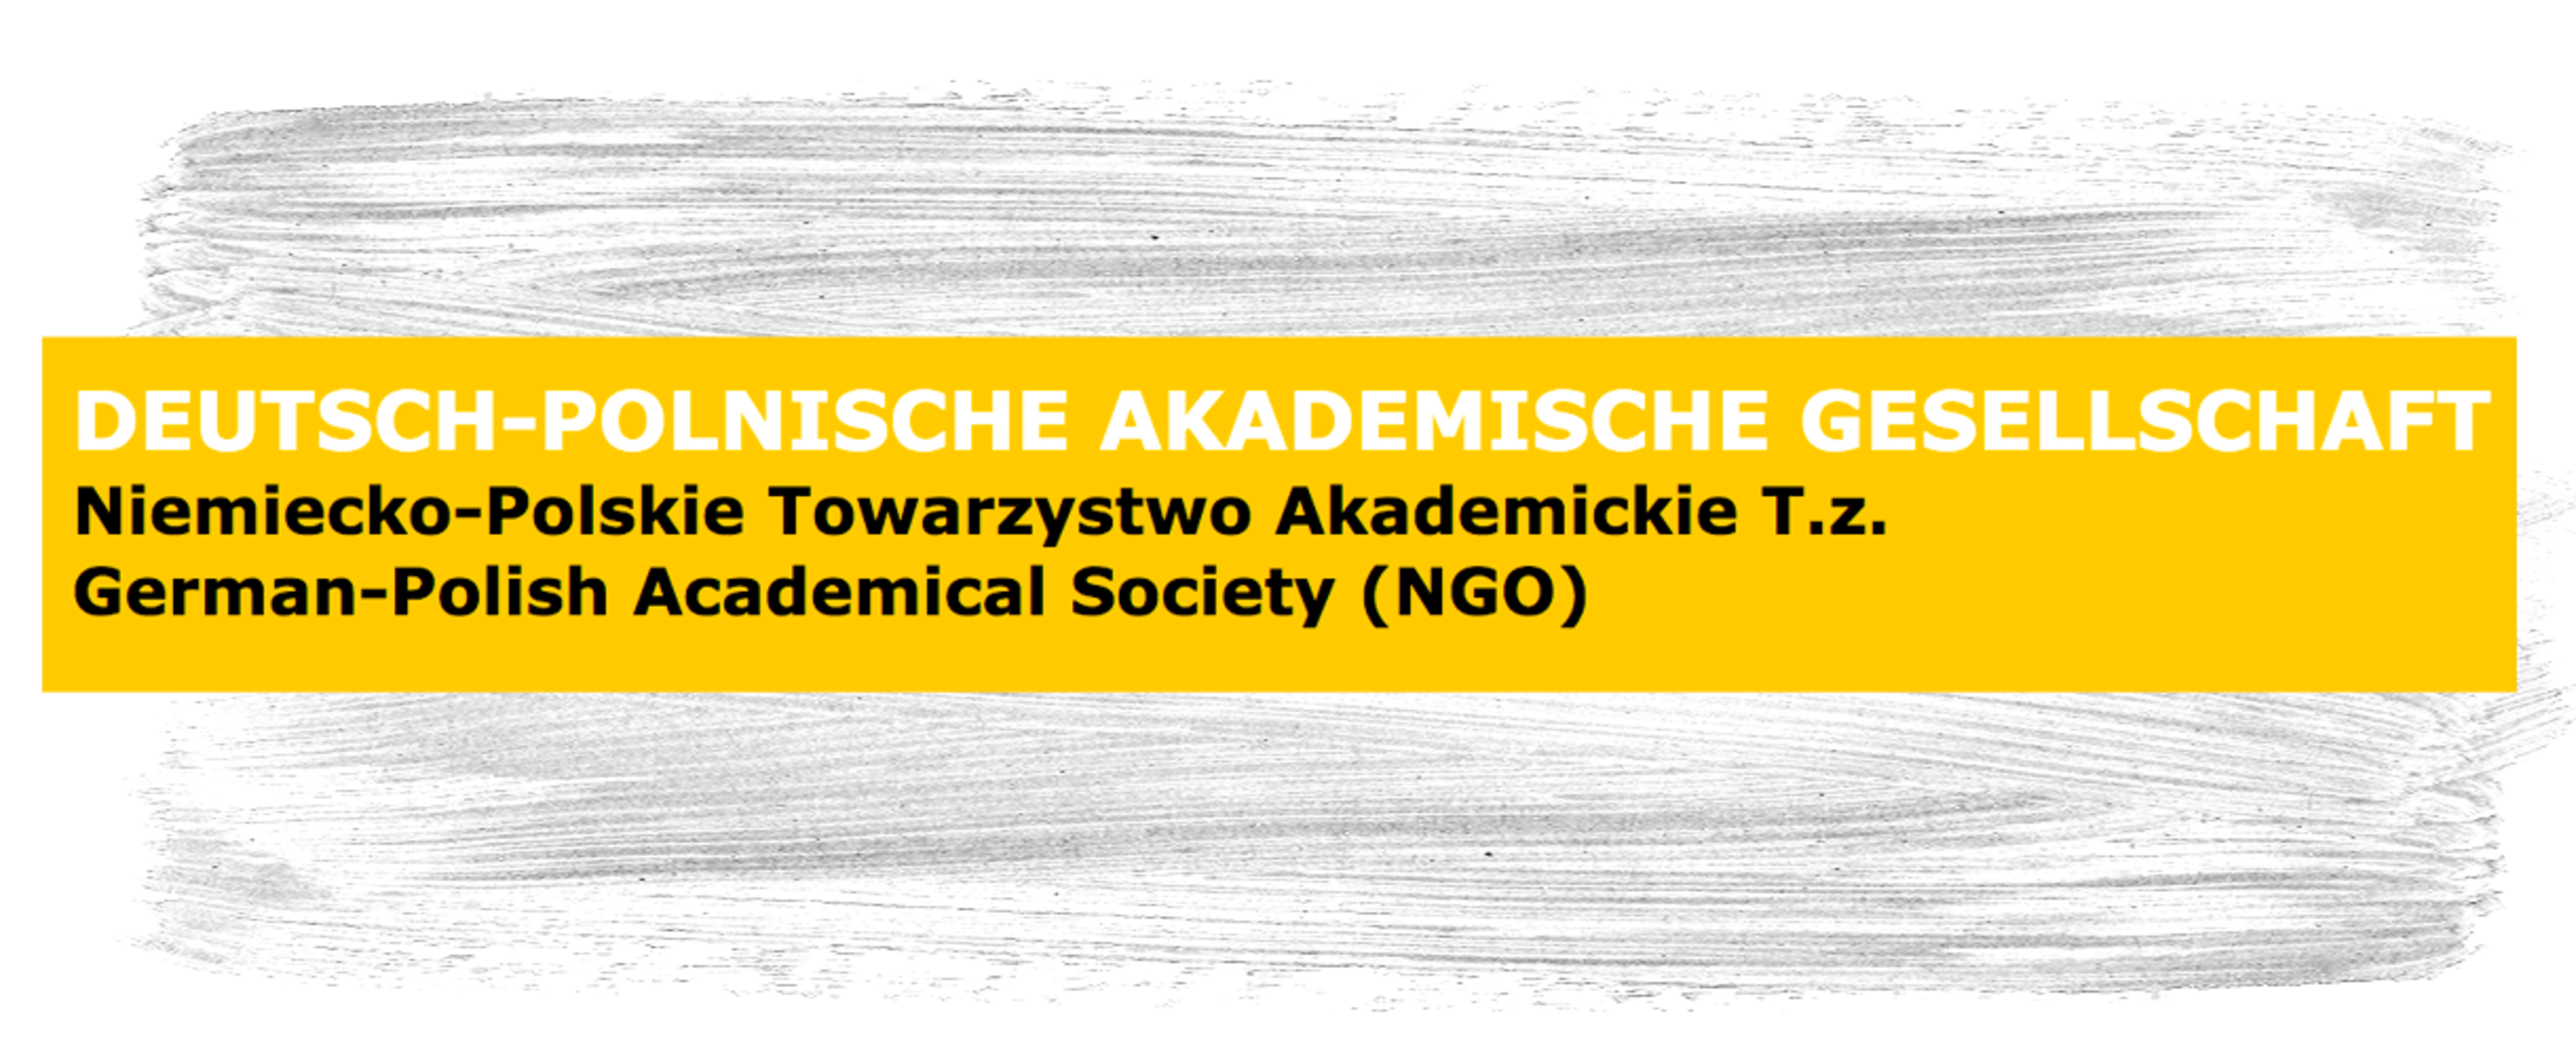 Deutsch-Polnische Akademische Gesellschaft e.V. (DPAG)